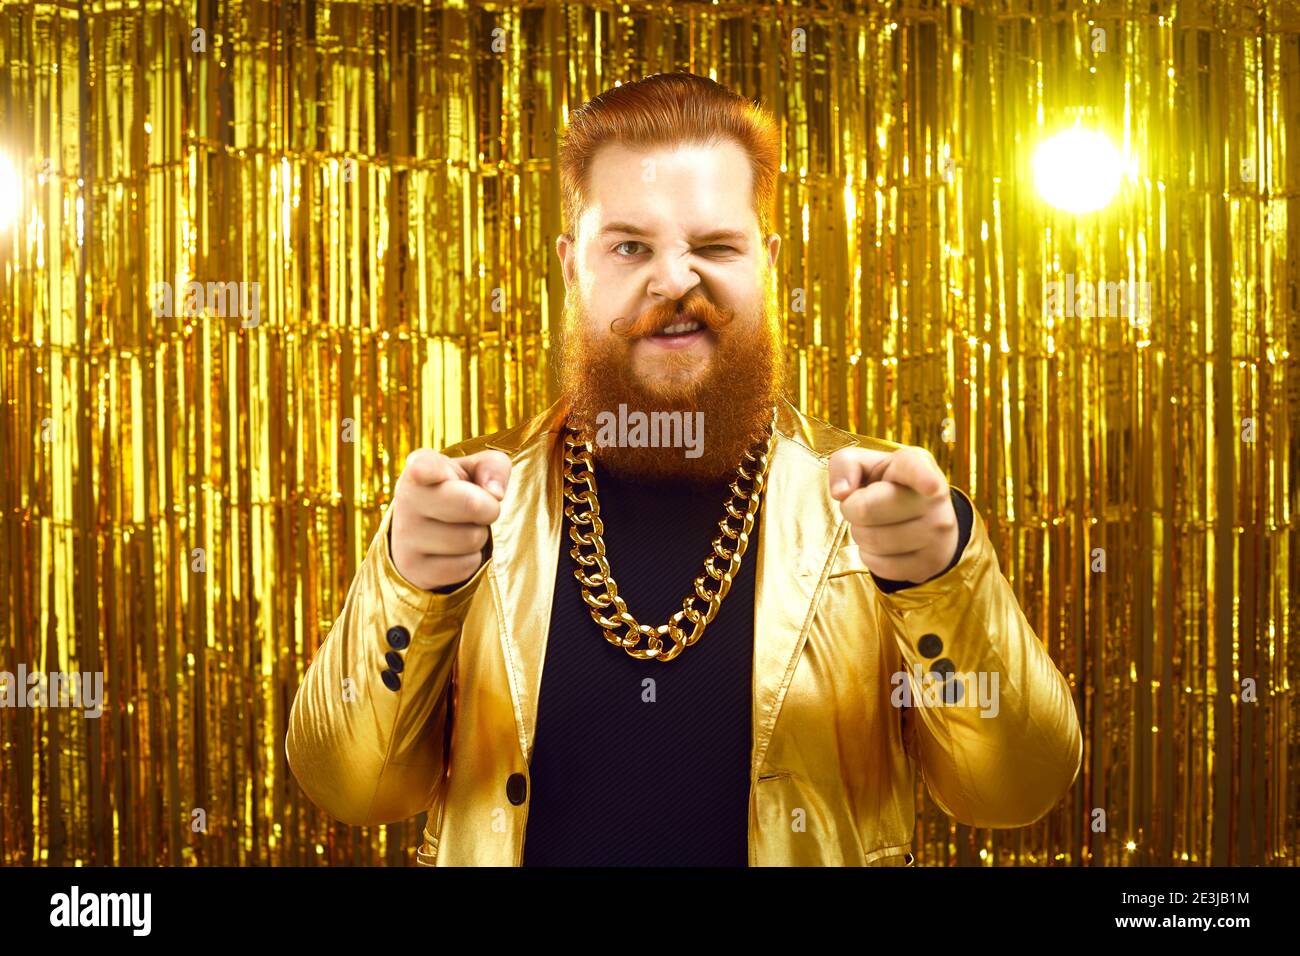 Homme extravagant en blouson doré funky, avec chaîne d'or autour du cou,  pointant vers l'appareil photo Photo Stock - Alamy